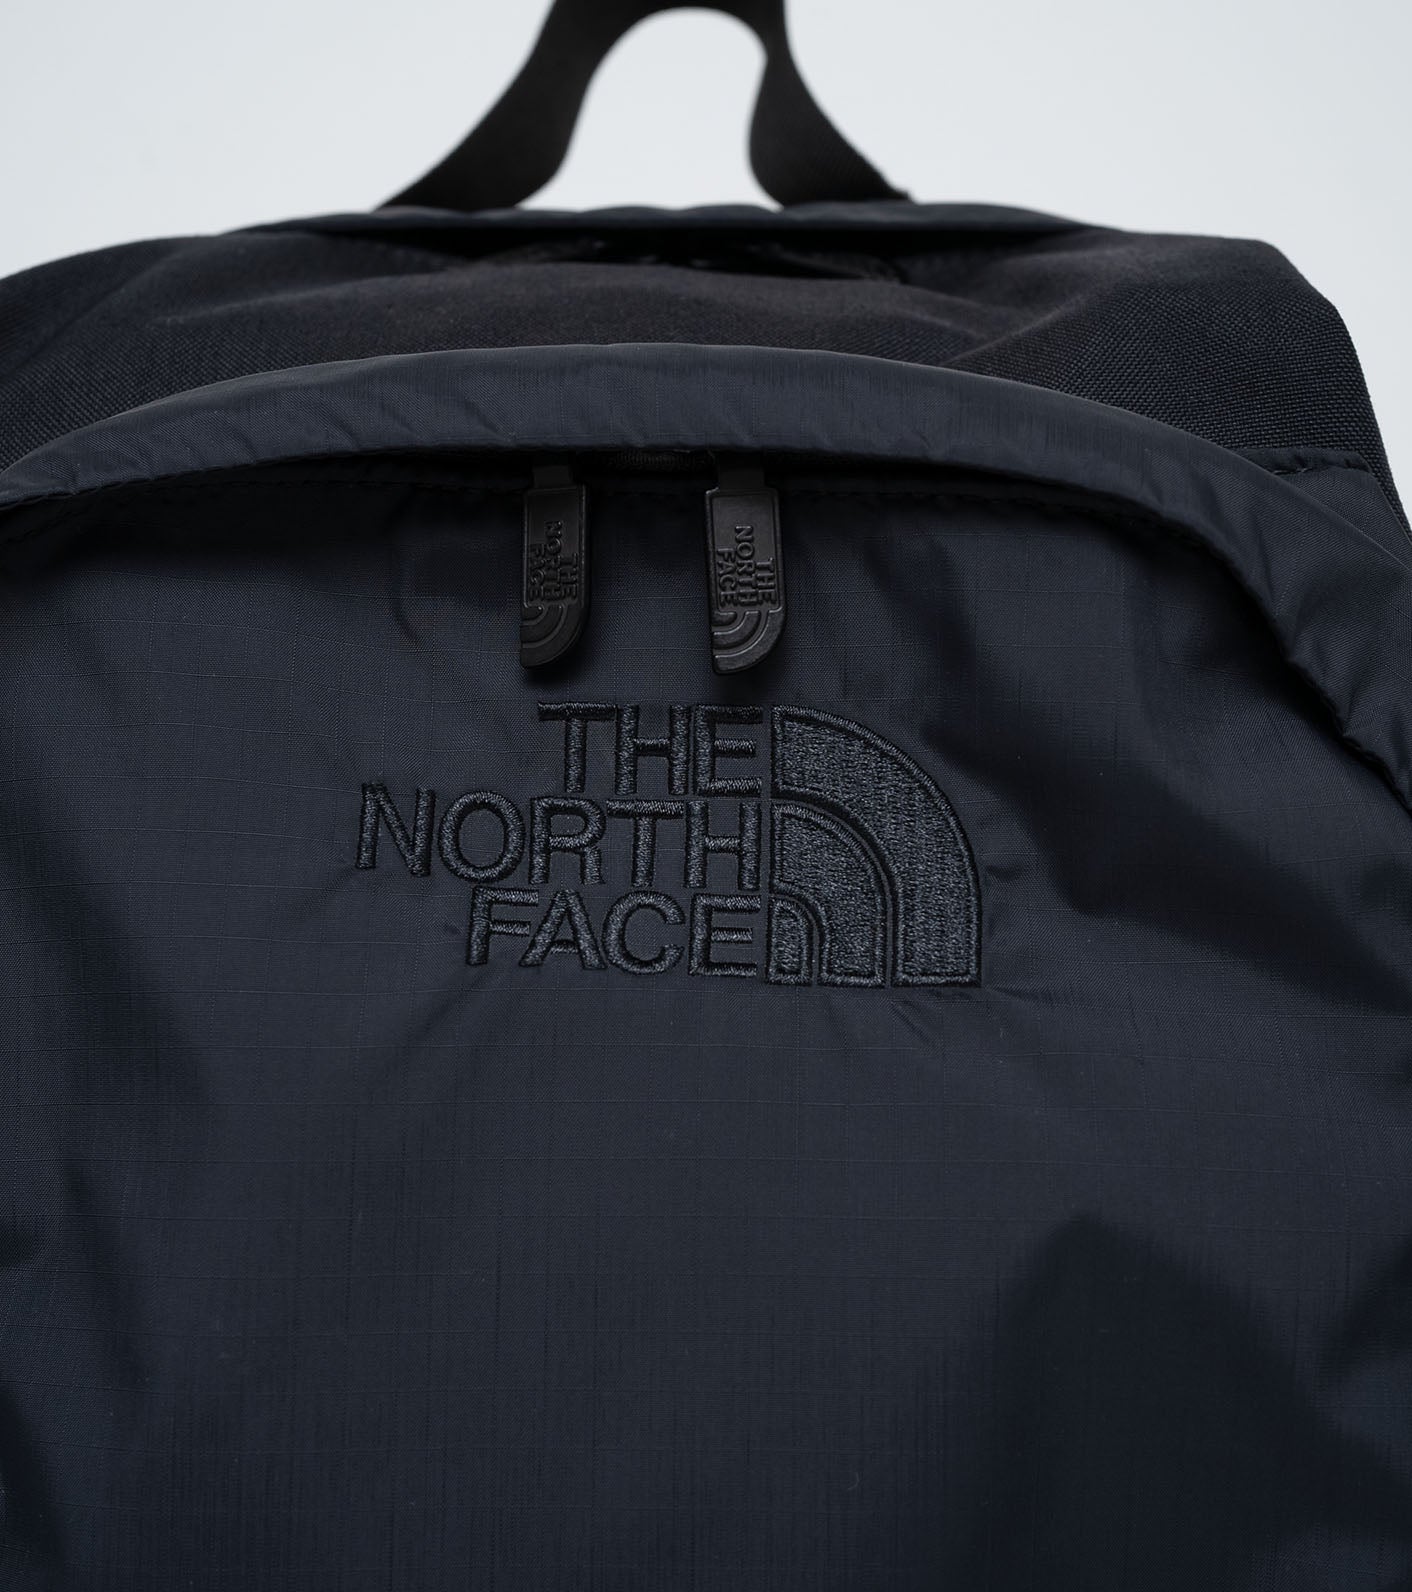 THE NORTH FACE PURPLE LABEL CORDURA Nylon Day Pack